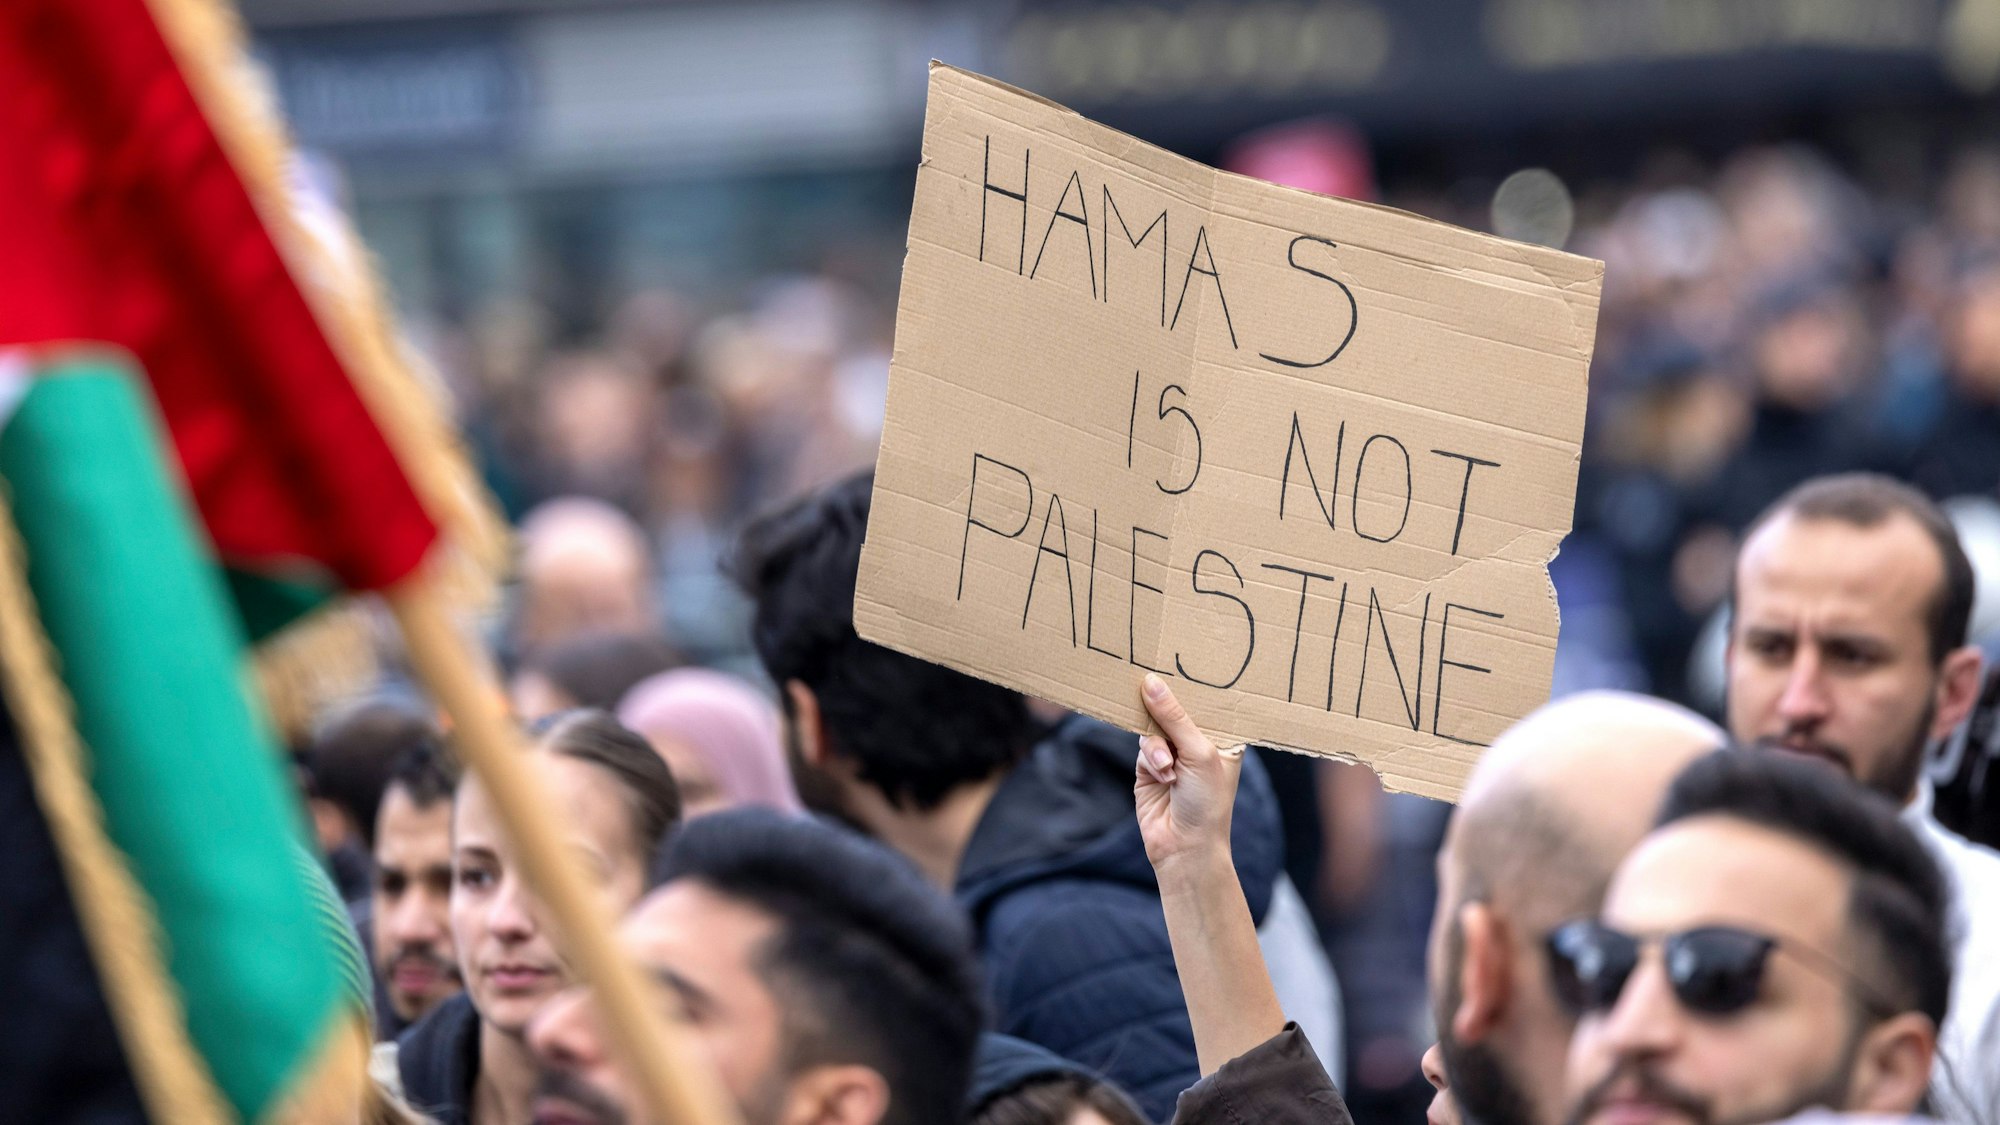 Ein Teilnehmer der Kundgebung hält ein Schild mit der Aufschrift „Hamas is not Palestine“ (Hamas ist nicht Palästina) hoch.